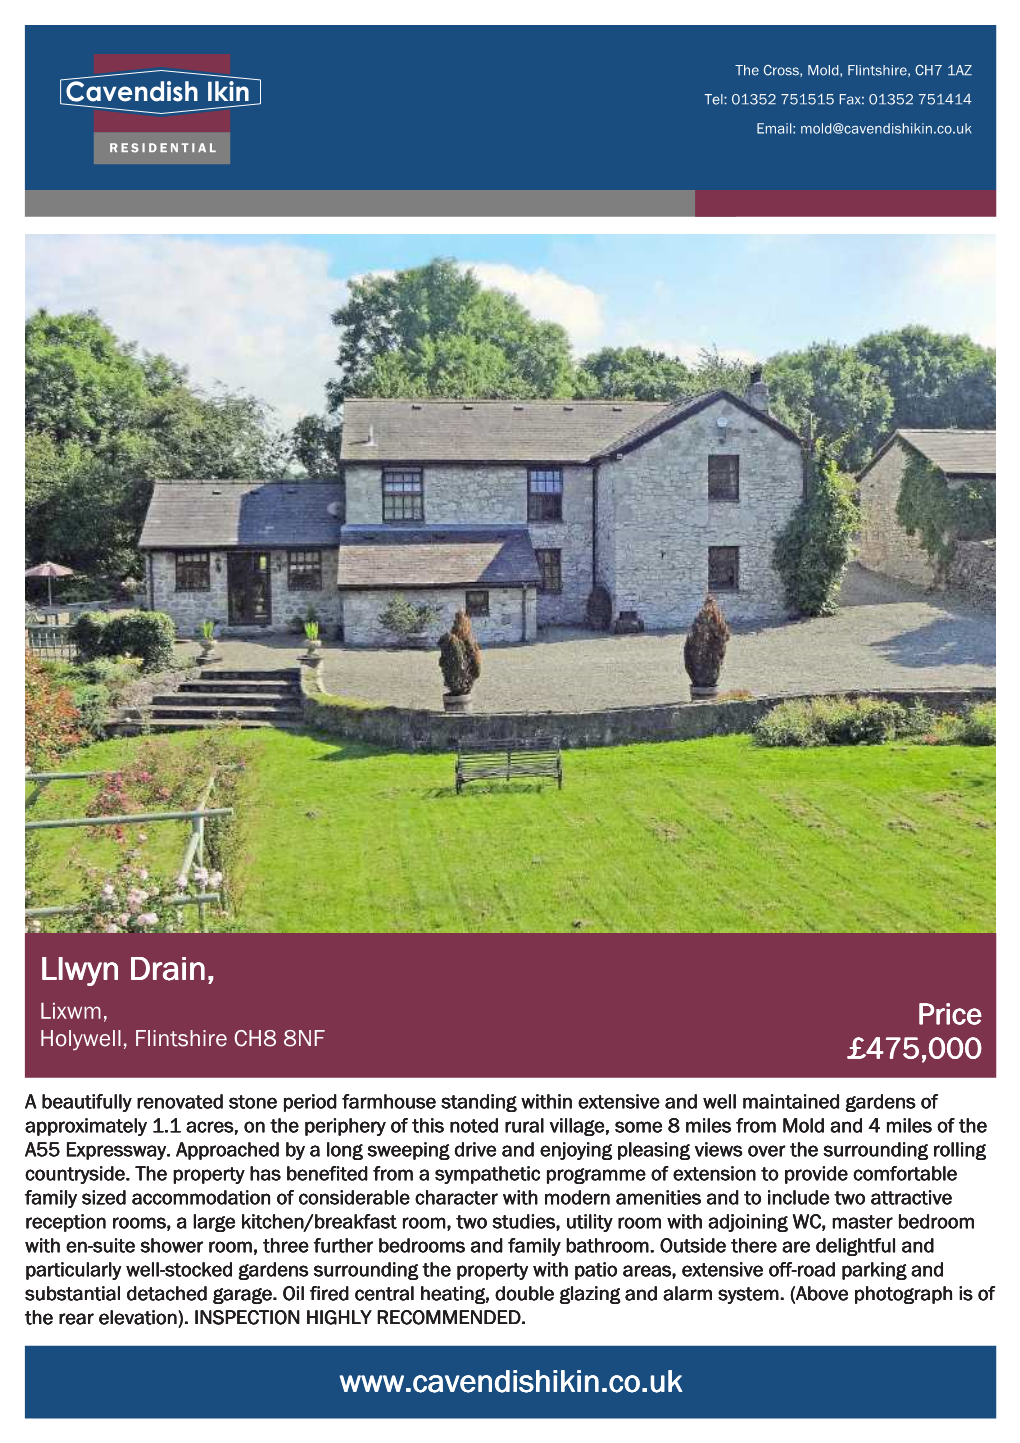 Llwyn Drain, Lixwm, Price Holywell, Flintshire CH8 8NF £475,000